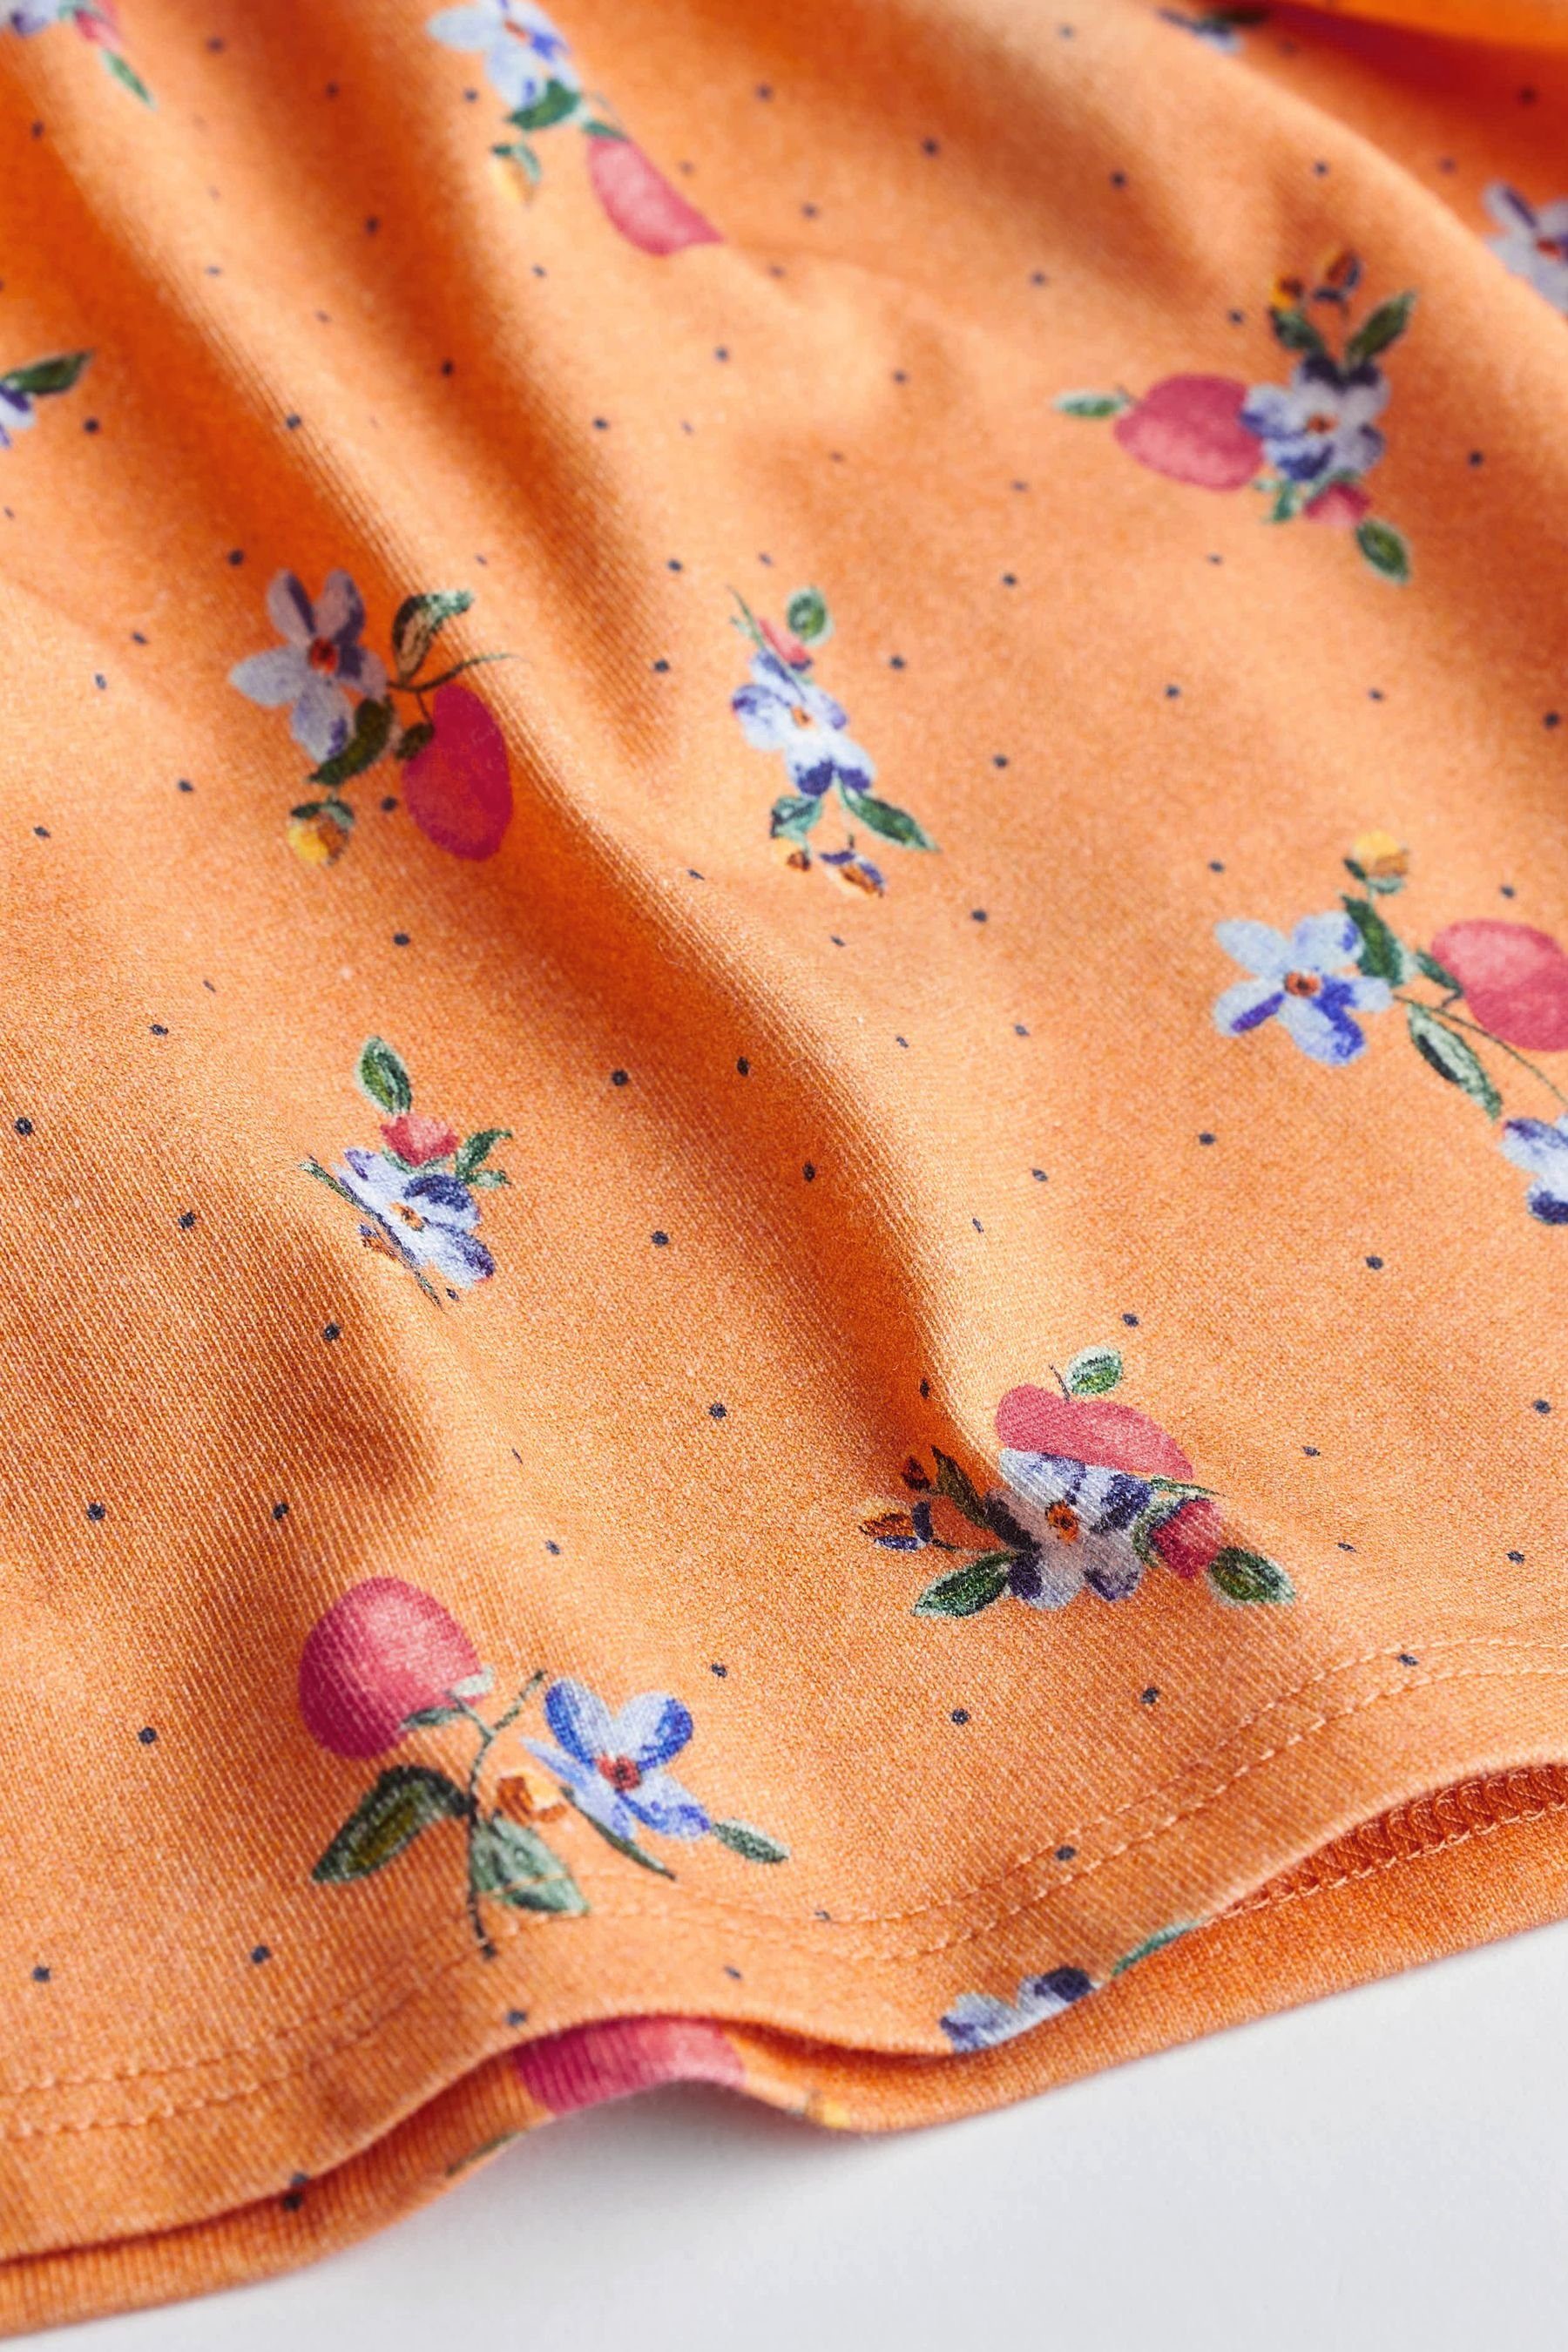 Next Jerseykleid Rüschen Orange Jersey 2er-Pack Floral mit & aus Baby-Kleid (2-tlg) Blue